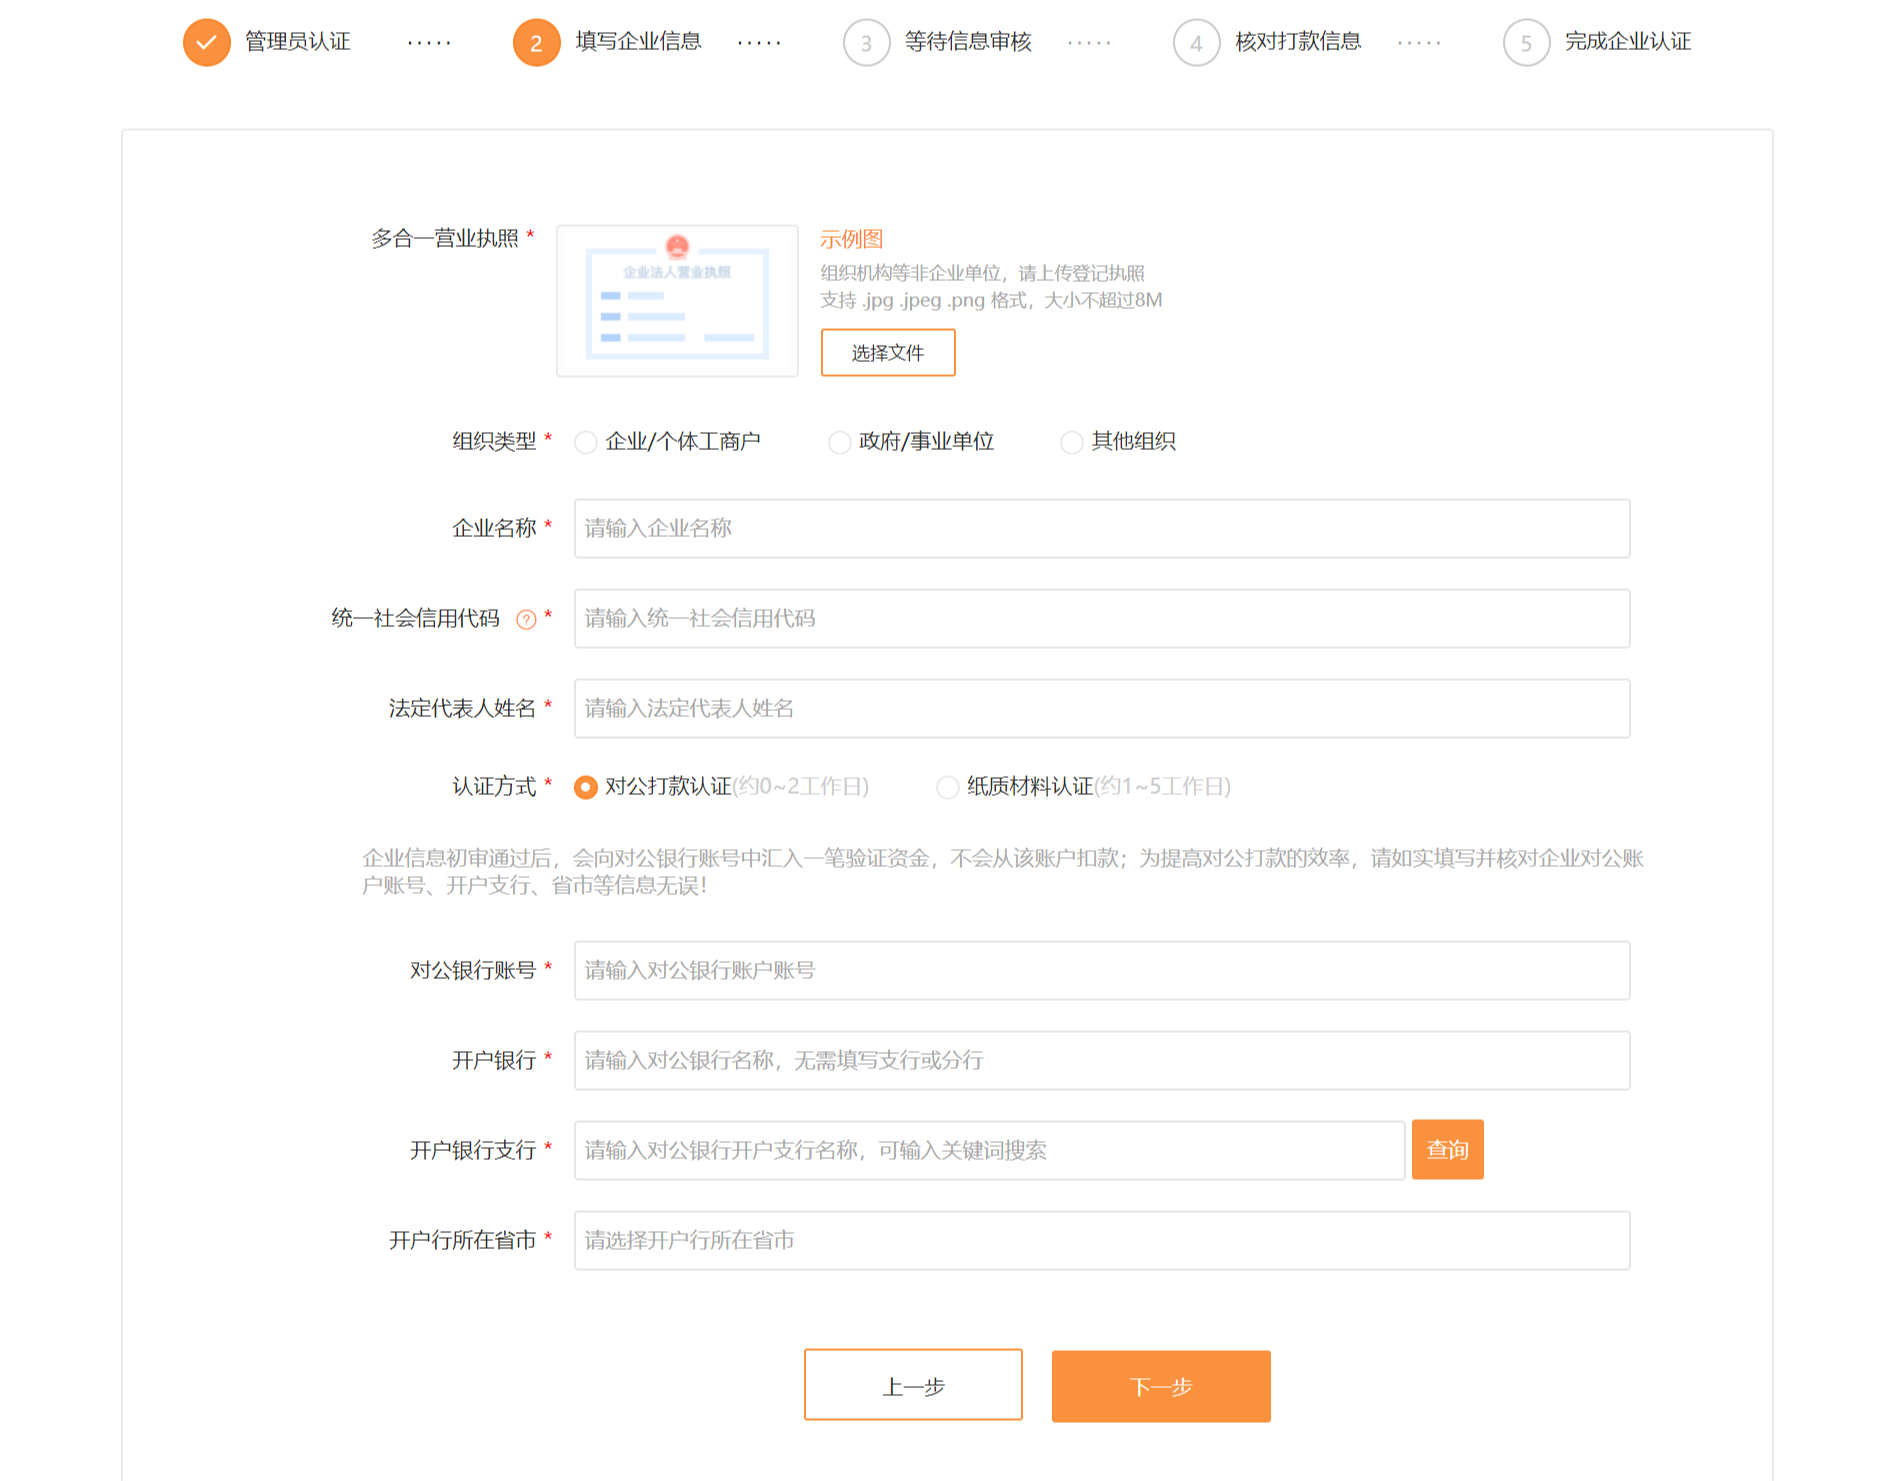 小米应用市场开放平台企业开发者账号注册操作指南